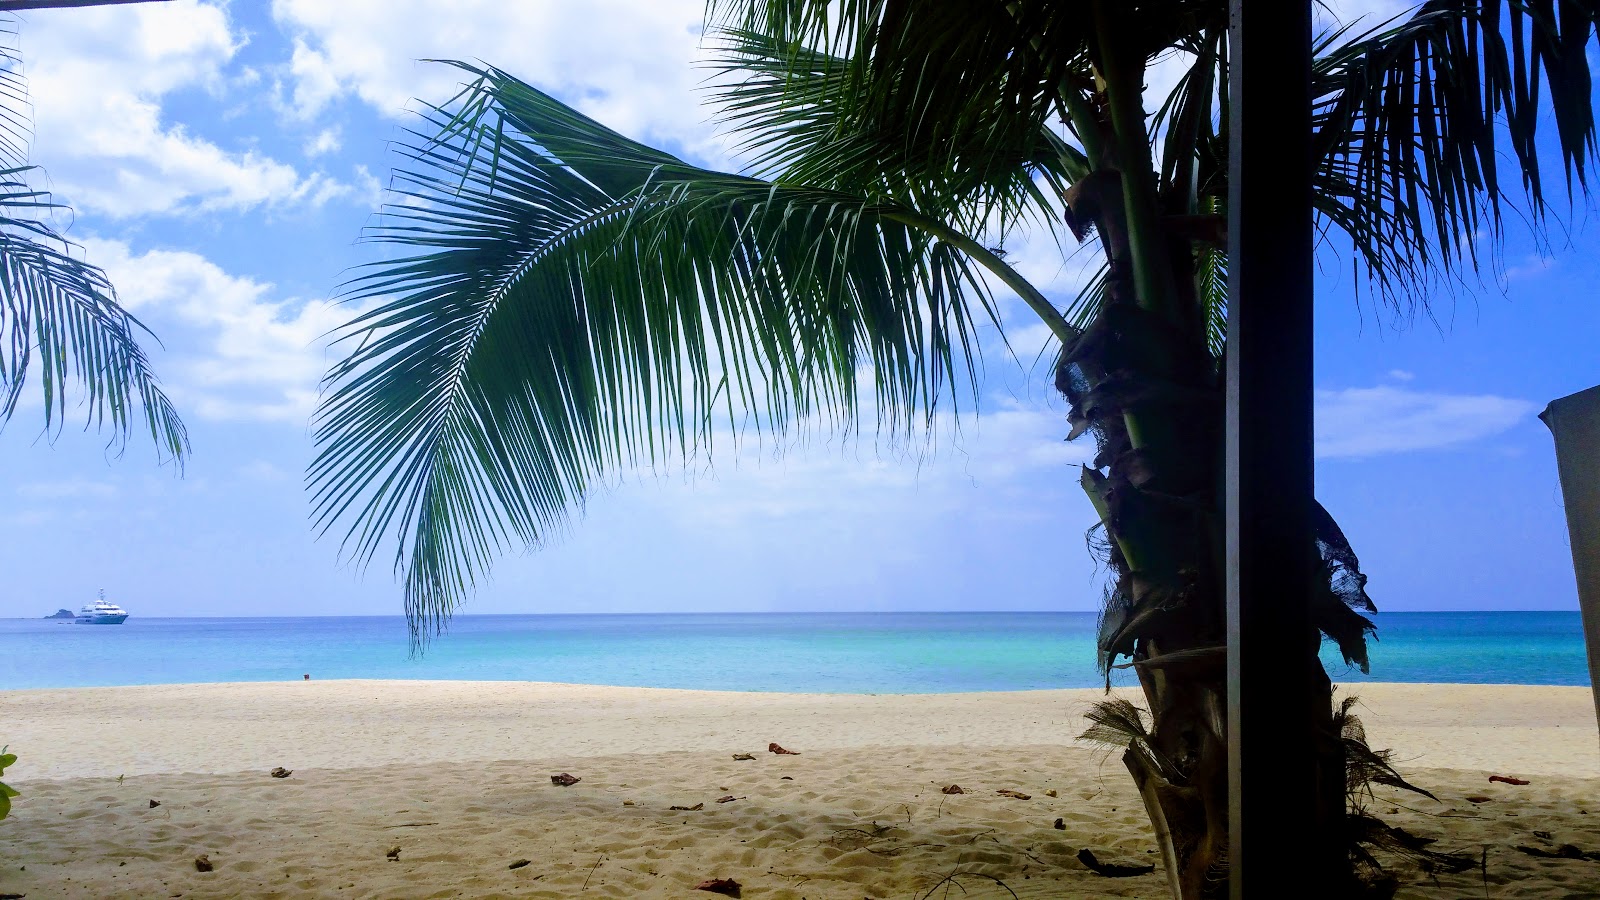 安达曼白沙滩的照片 带有碧绿色纯水表面